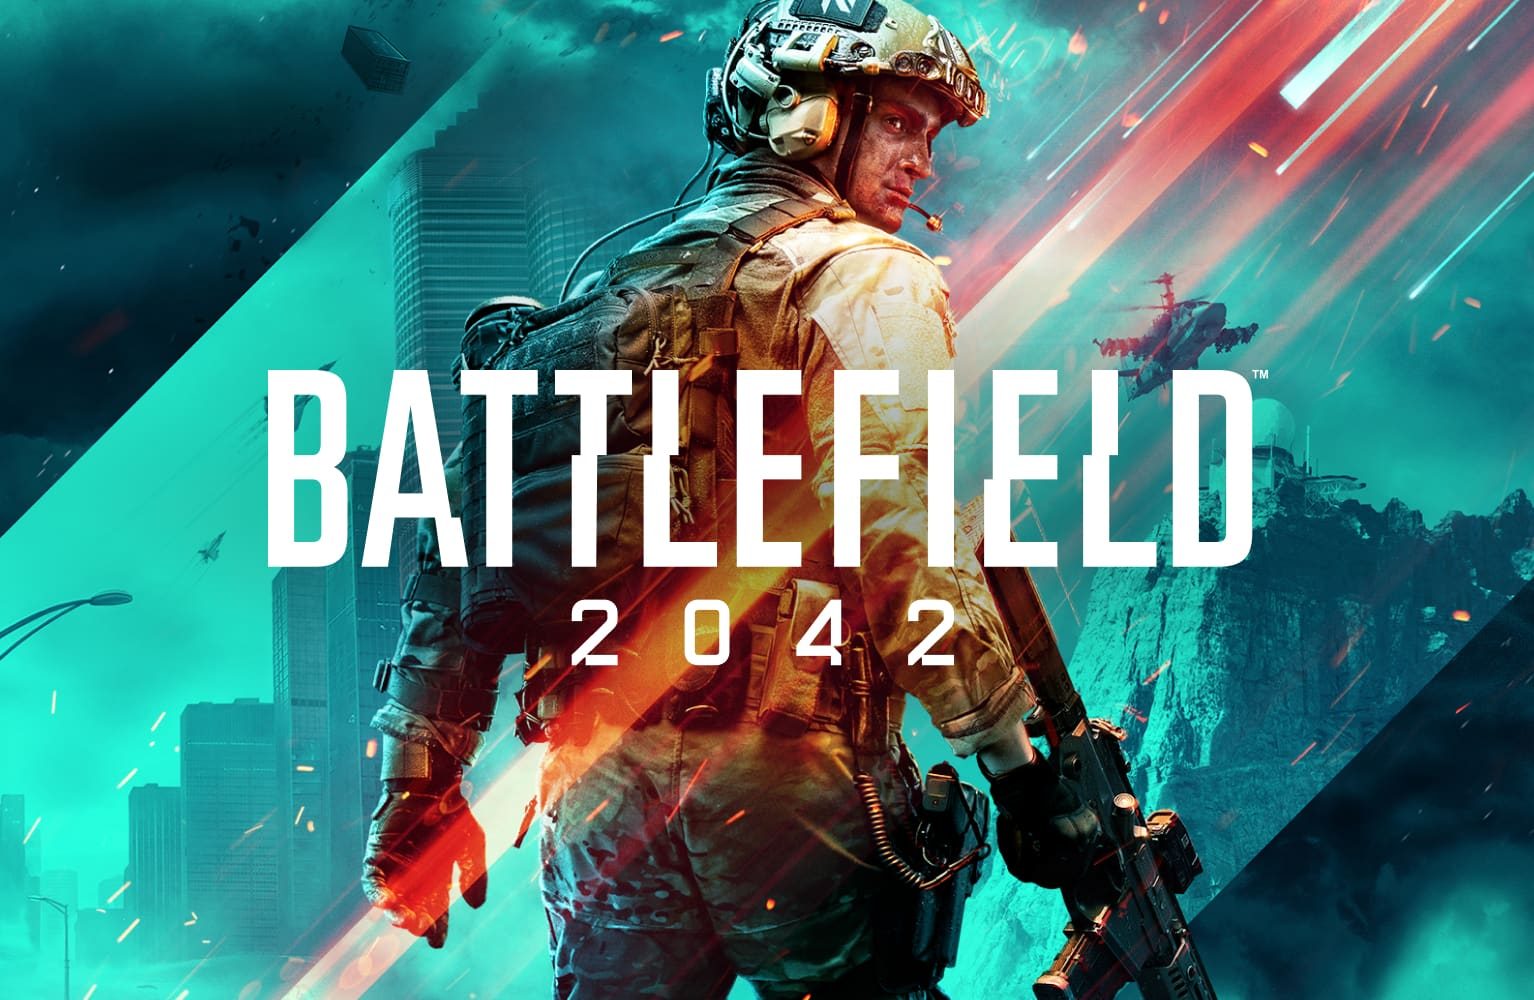 Fue así Battlefield Portalhace unos meses presento al mundo el nuevo Battlefield 2042. Un juego que en lo personal siempre me ha gustado desde 2002